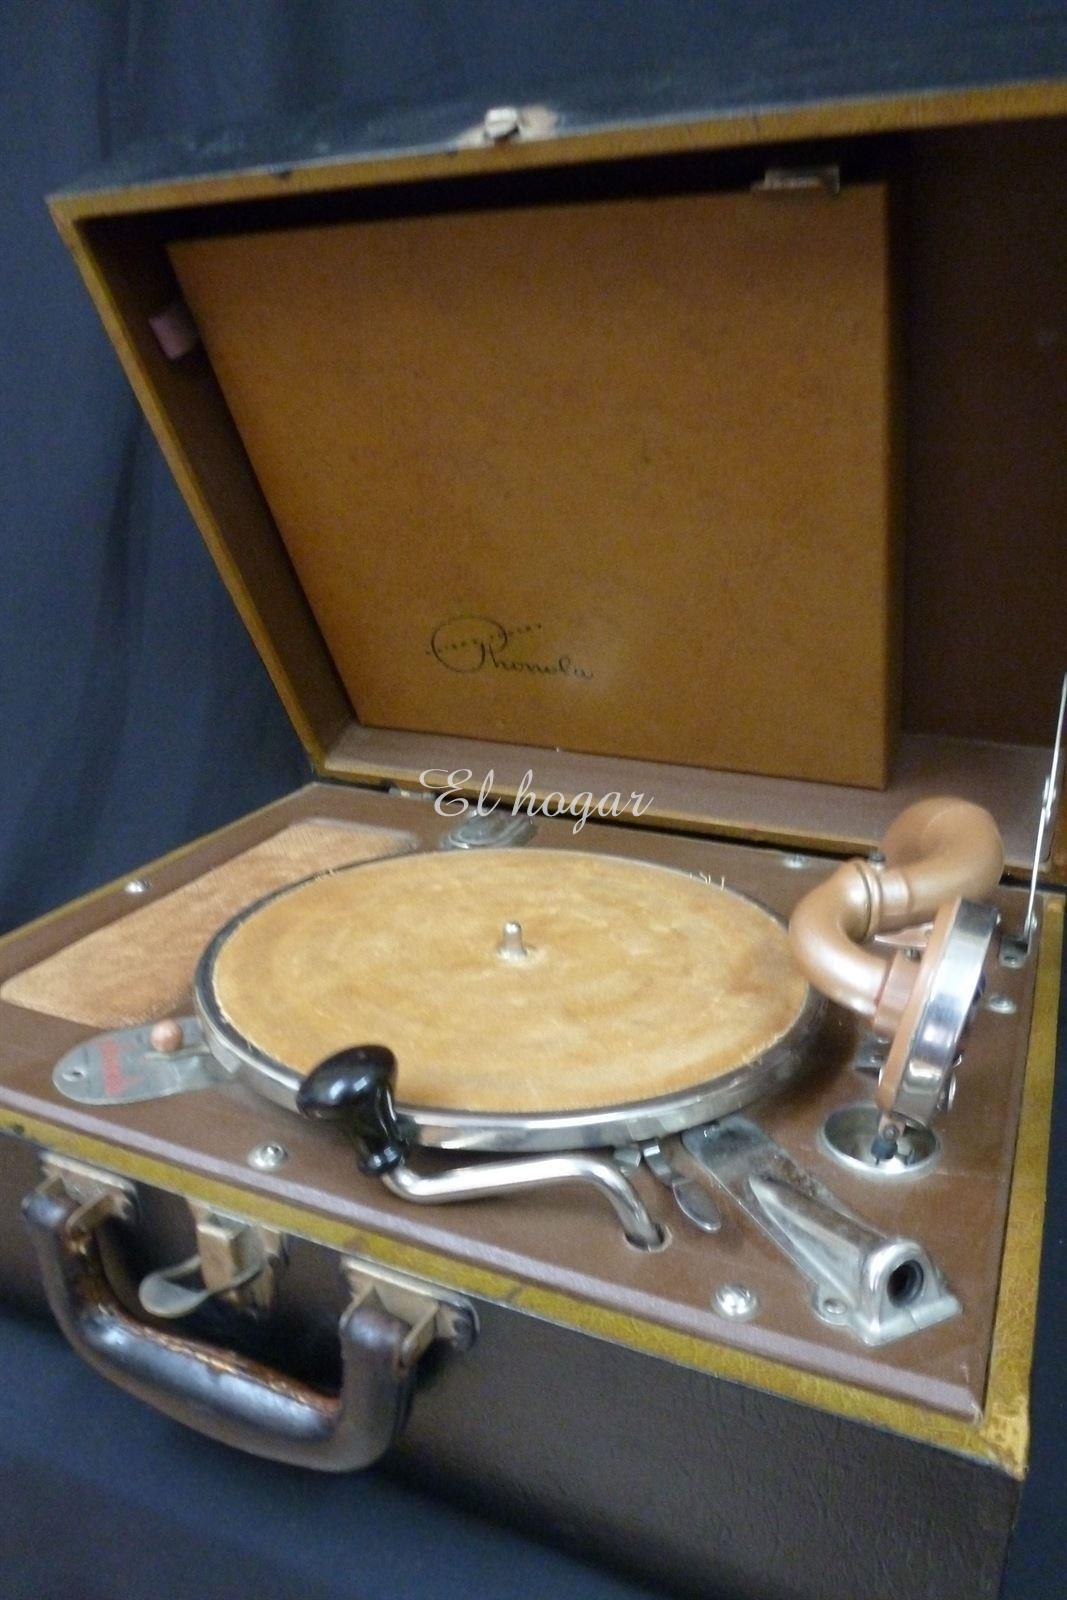 Gramofono Phonola 884 de Waters Conley Cº. (1941-1942) - Imagen 1